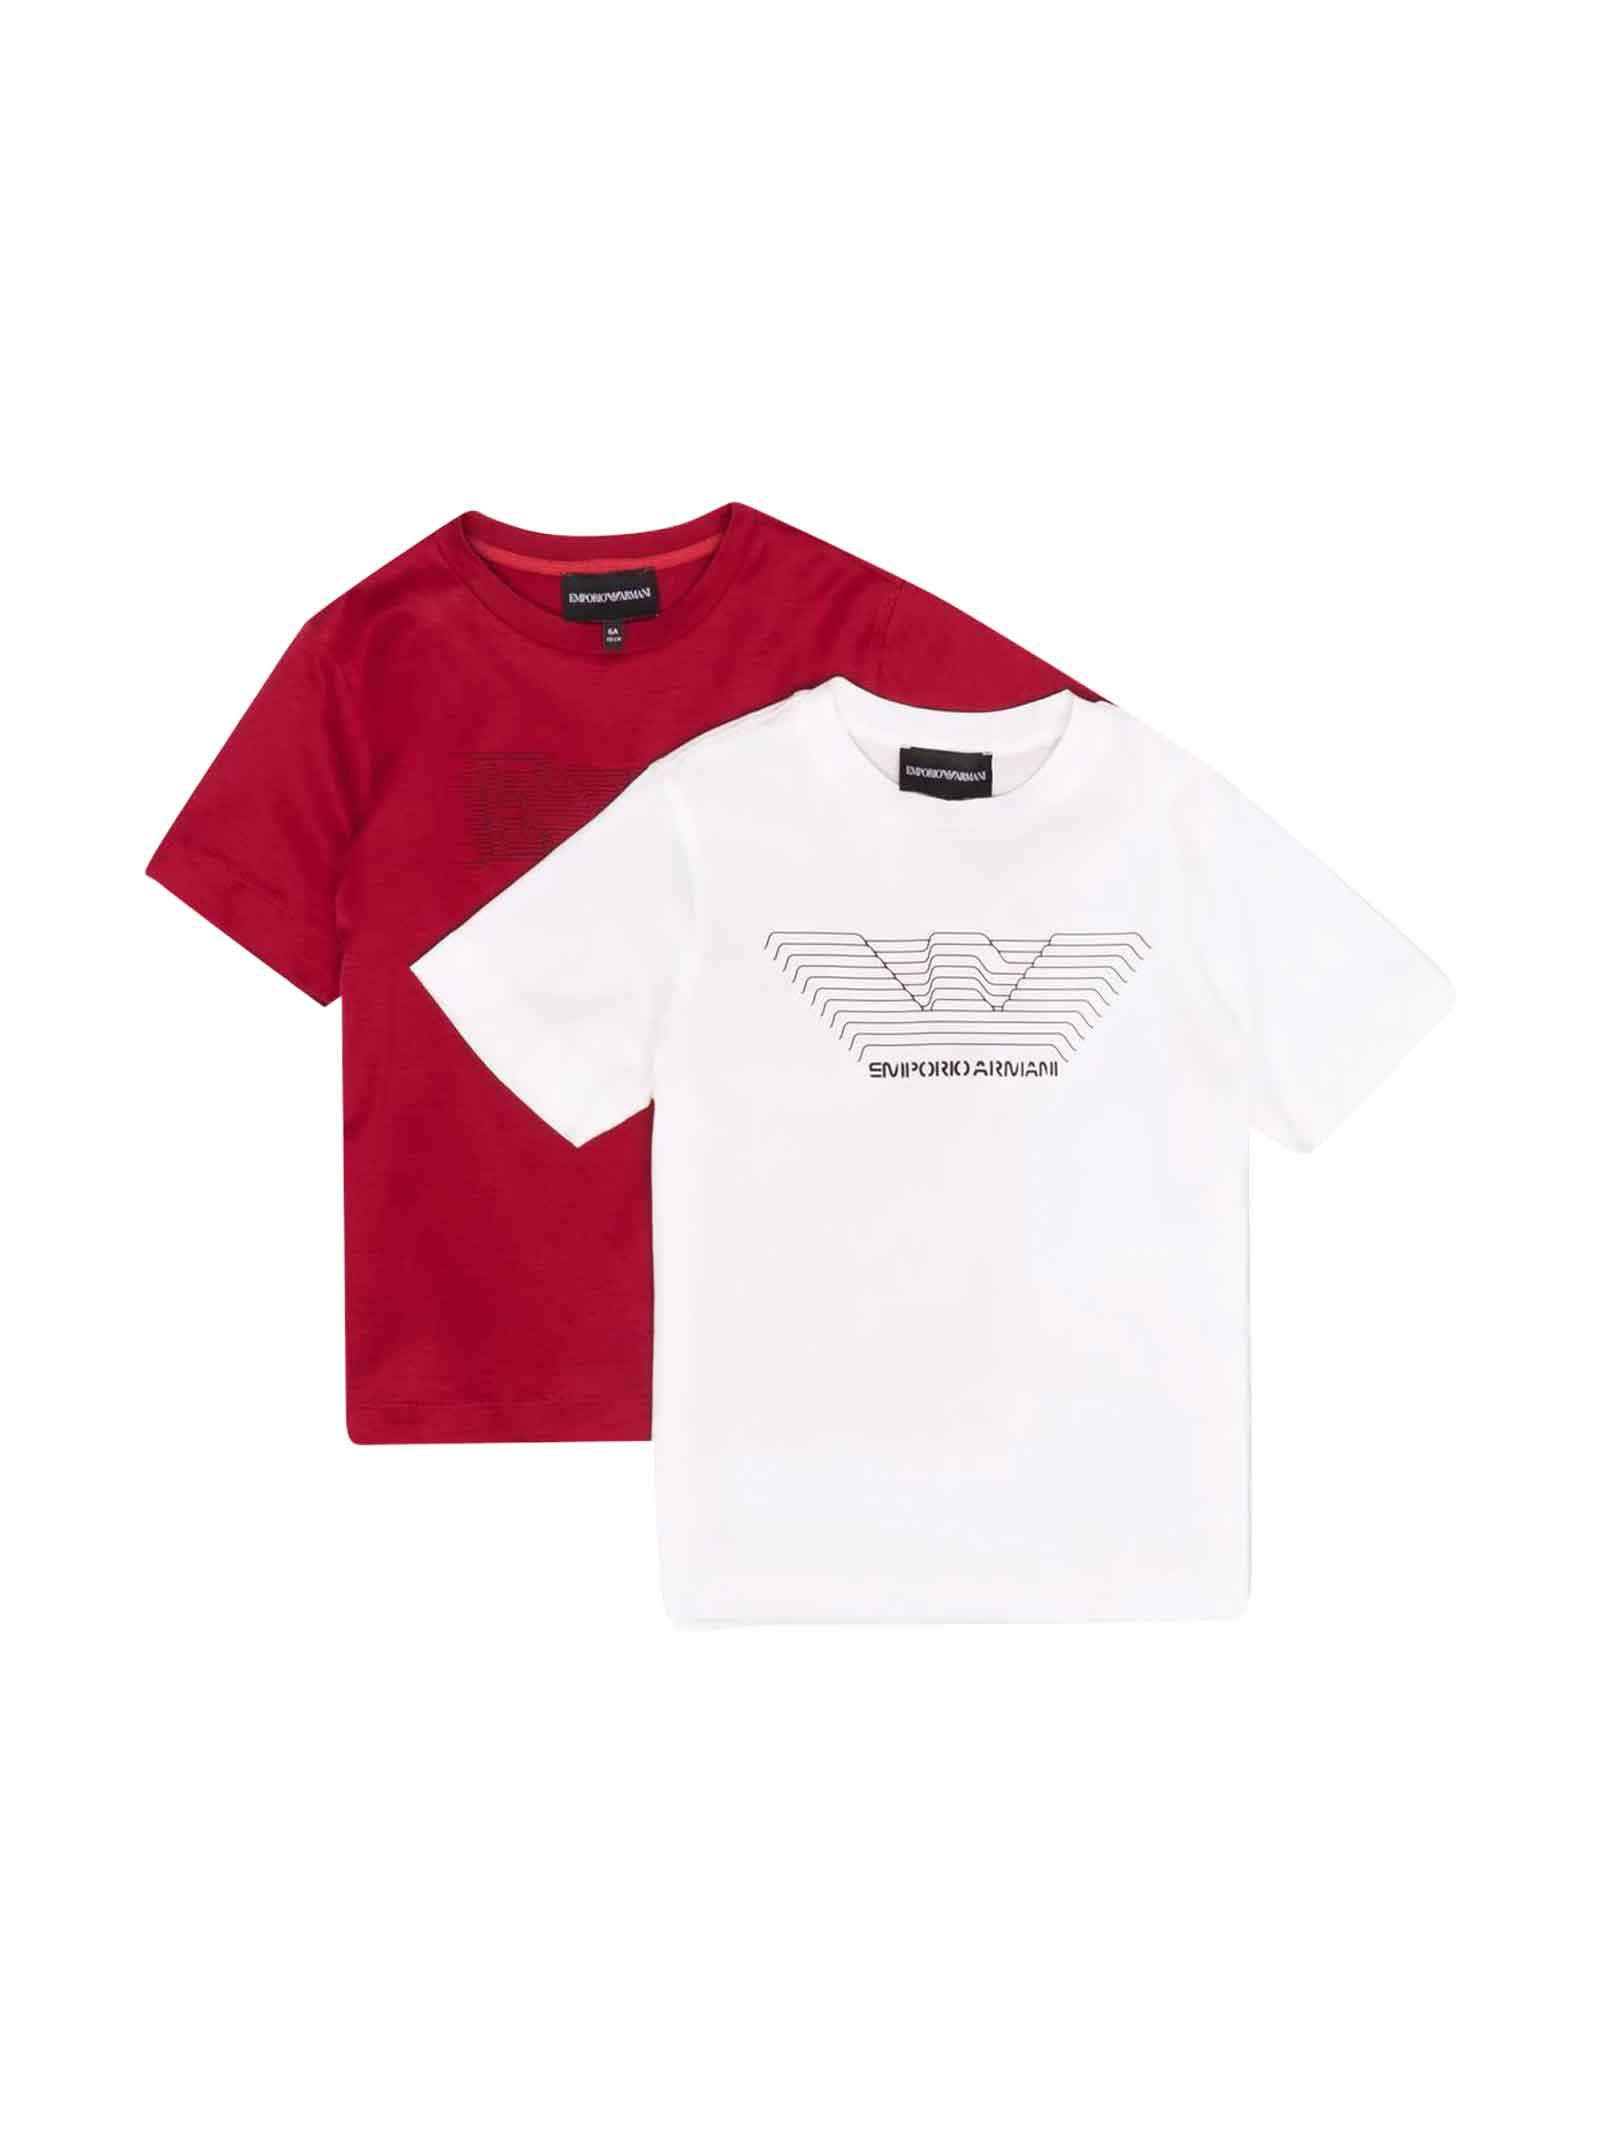 Emporio Armani Set 2 White / Red T-shirt Teen Boy